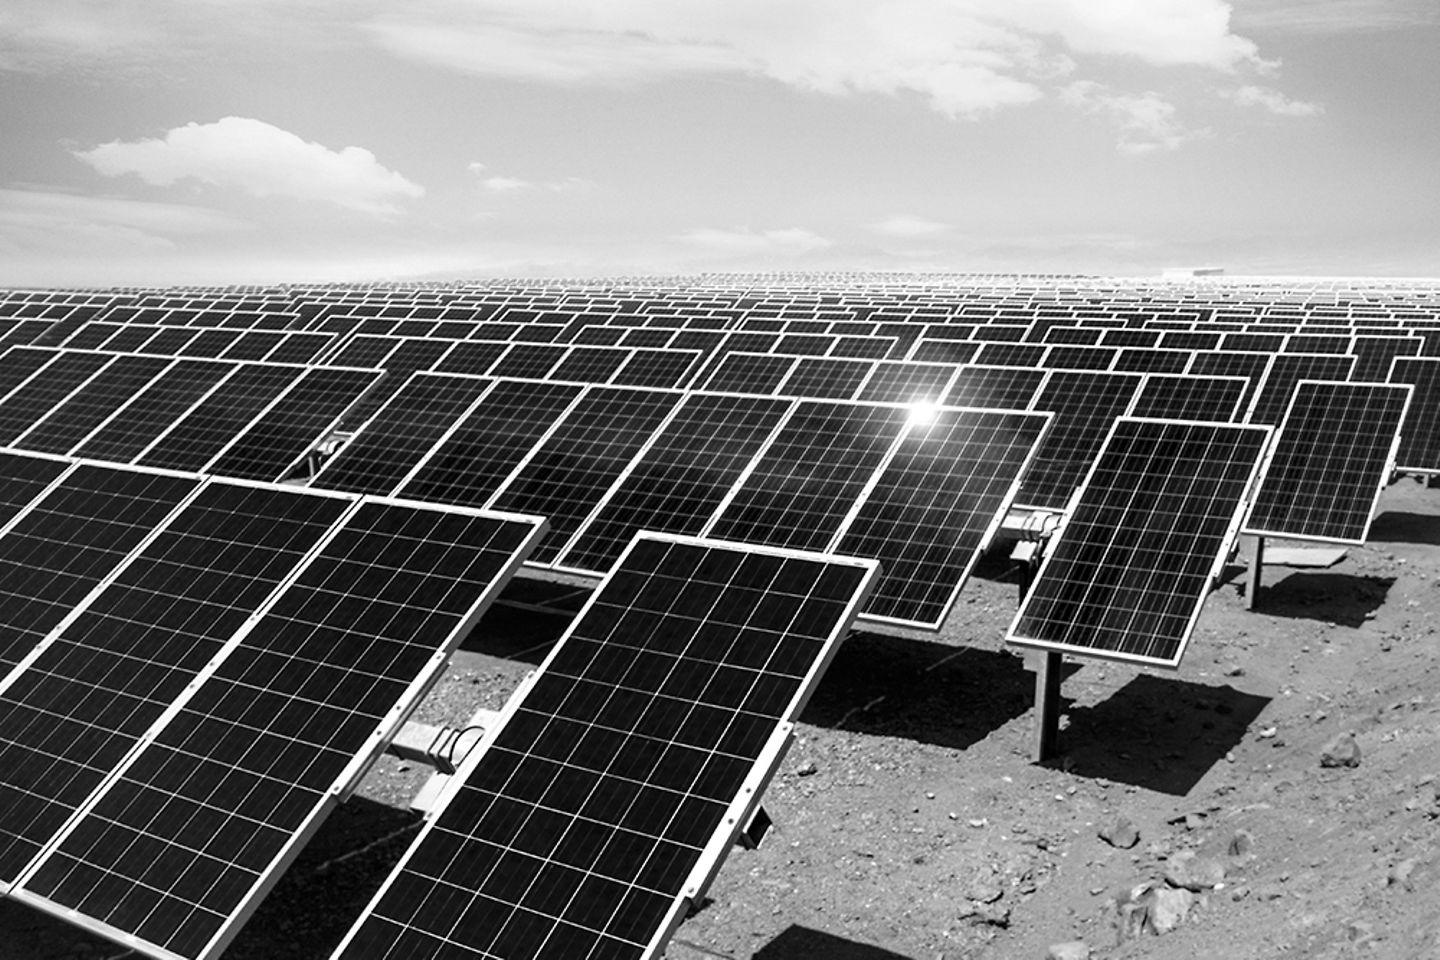 Image en noir et blanc d’une ferme solaire